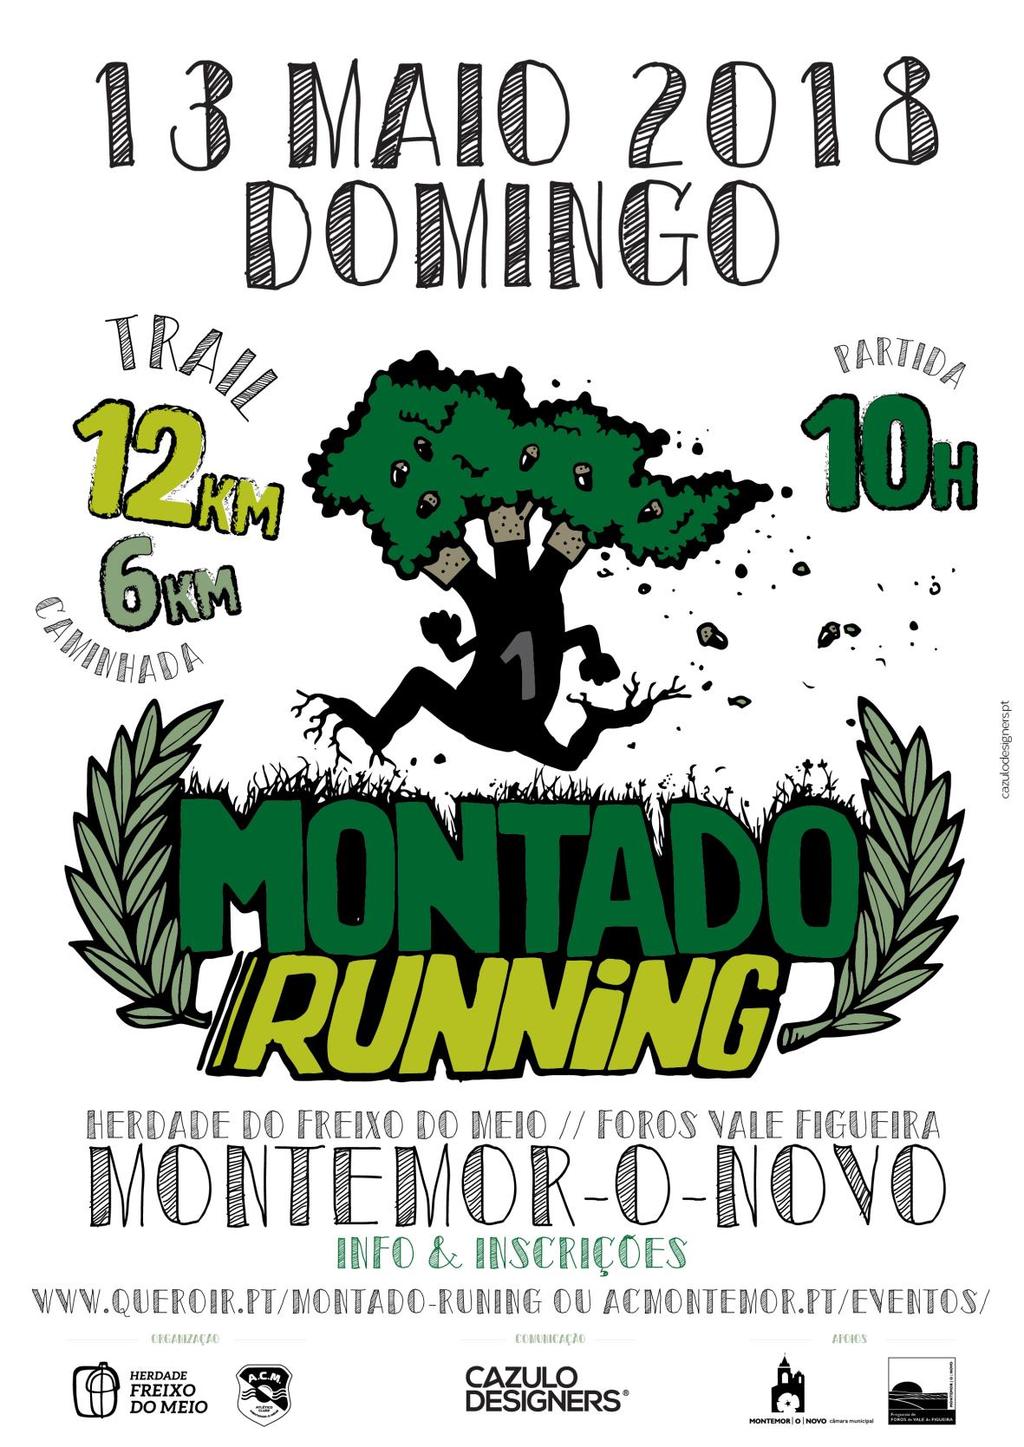 Regulamento Montado Running pretende ser um evento de Corrida/caminhada organizado em conjunto pelo Atlético Clube de Montemor e pela Herdade Freixo do